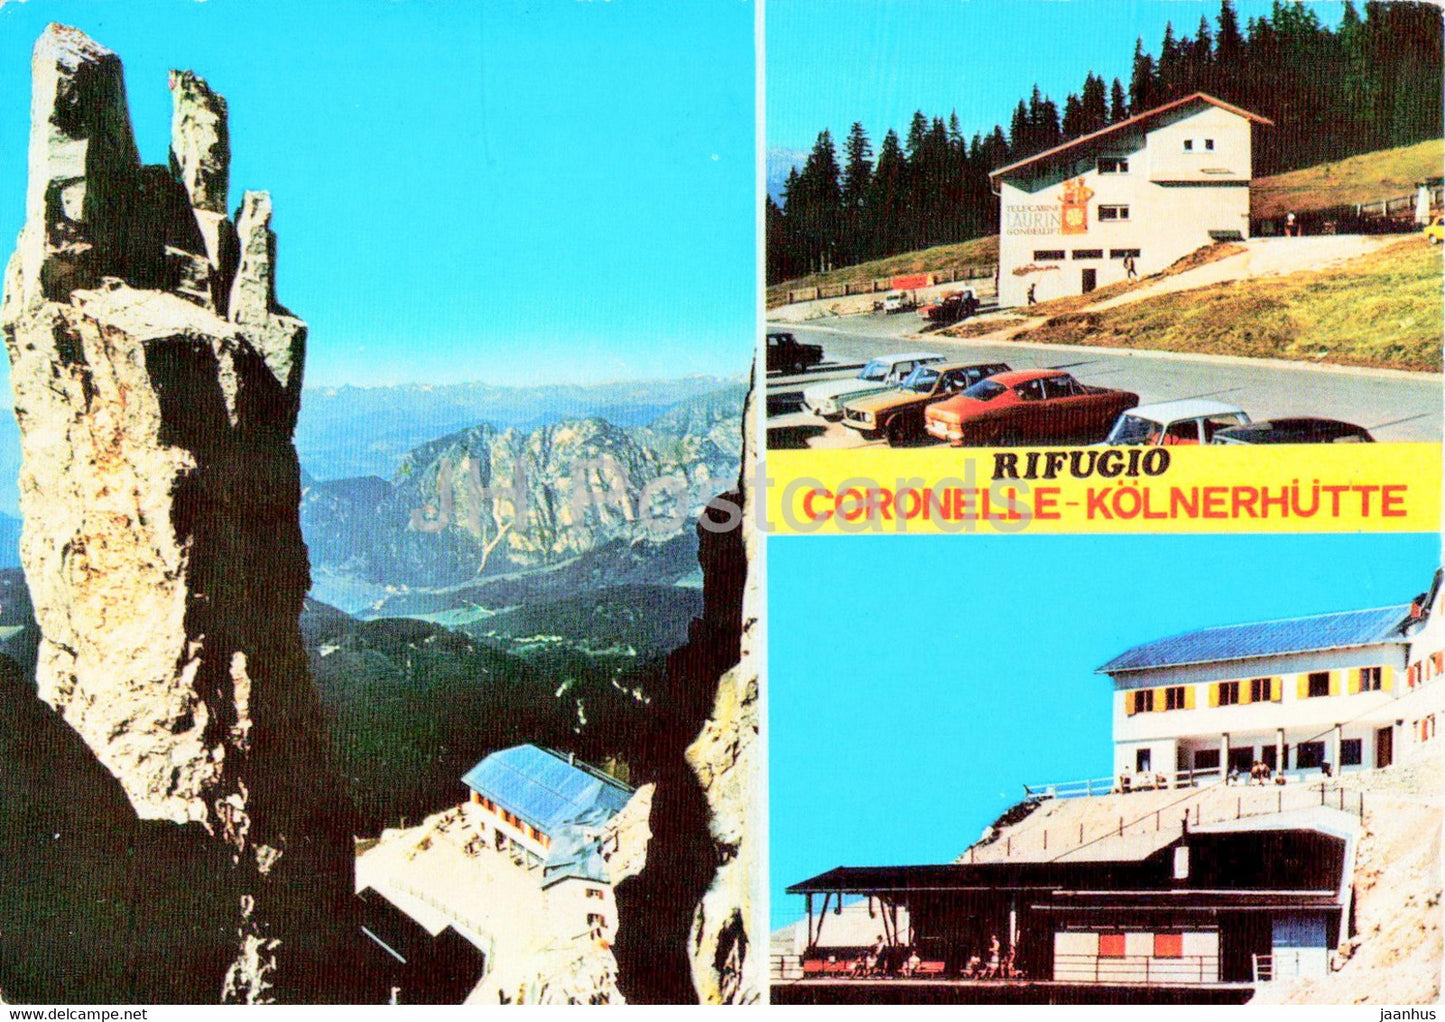 Rifugio Coronelle - Kolnerhutte - Gruppo del Catinaccio - car - Italy - unused - JH Postcards